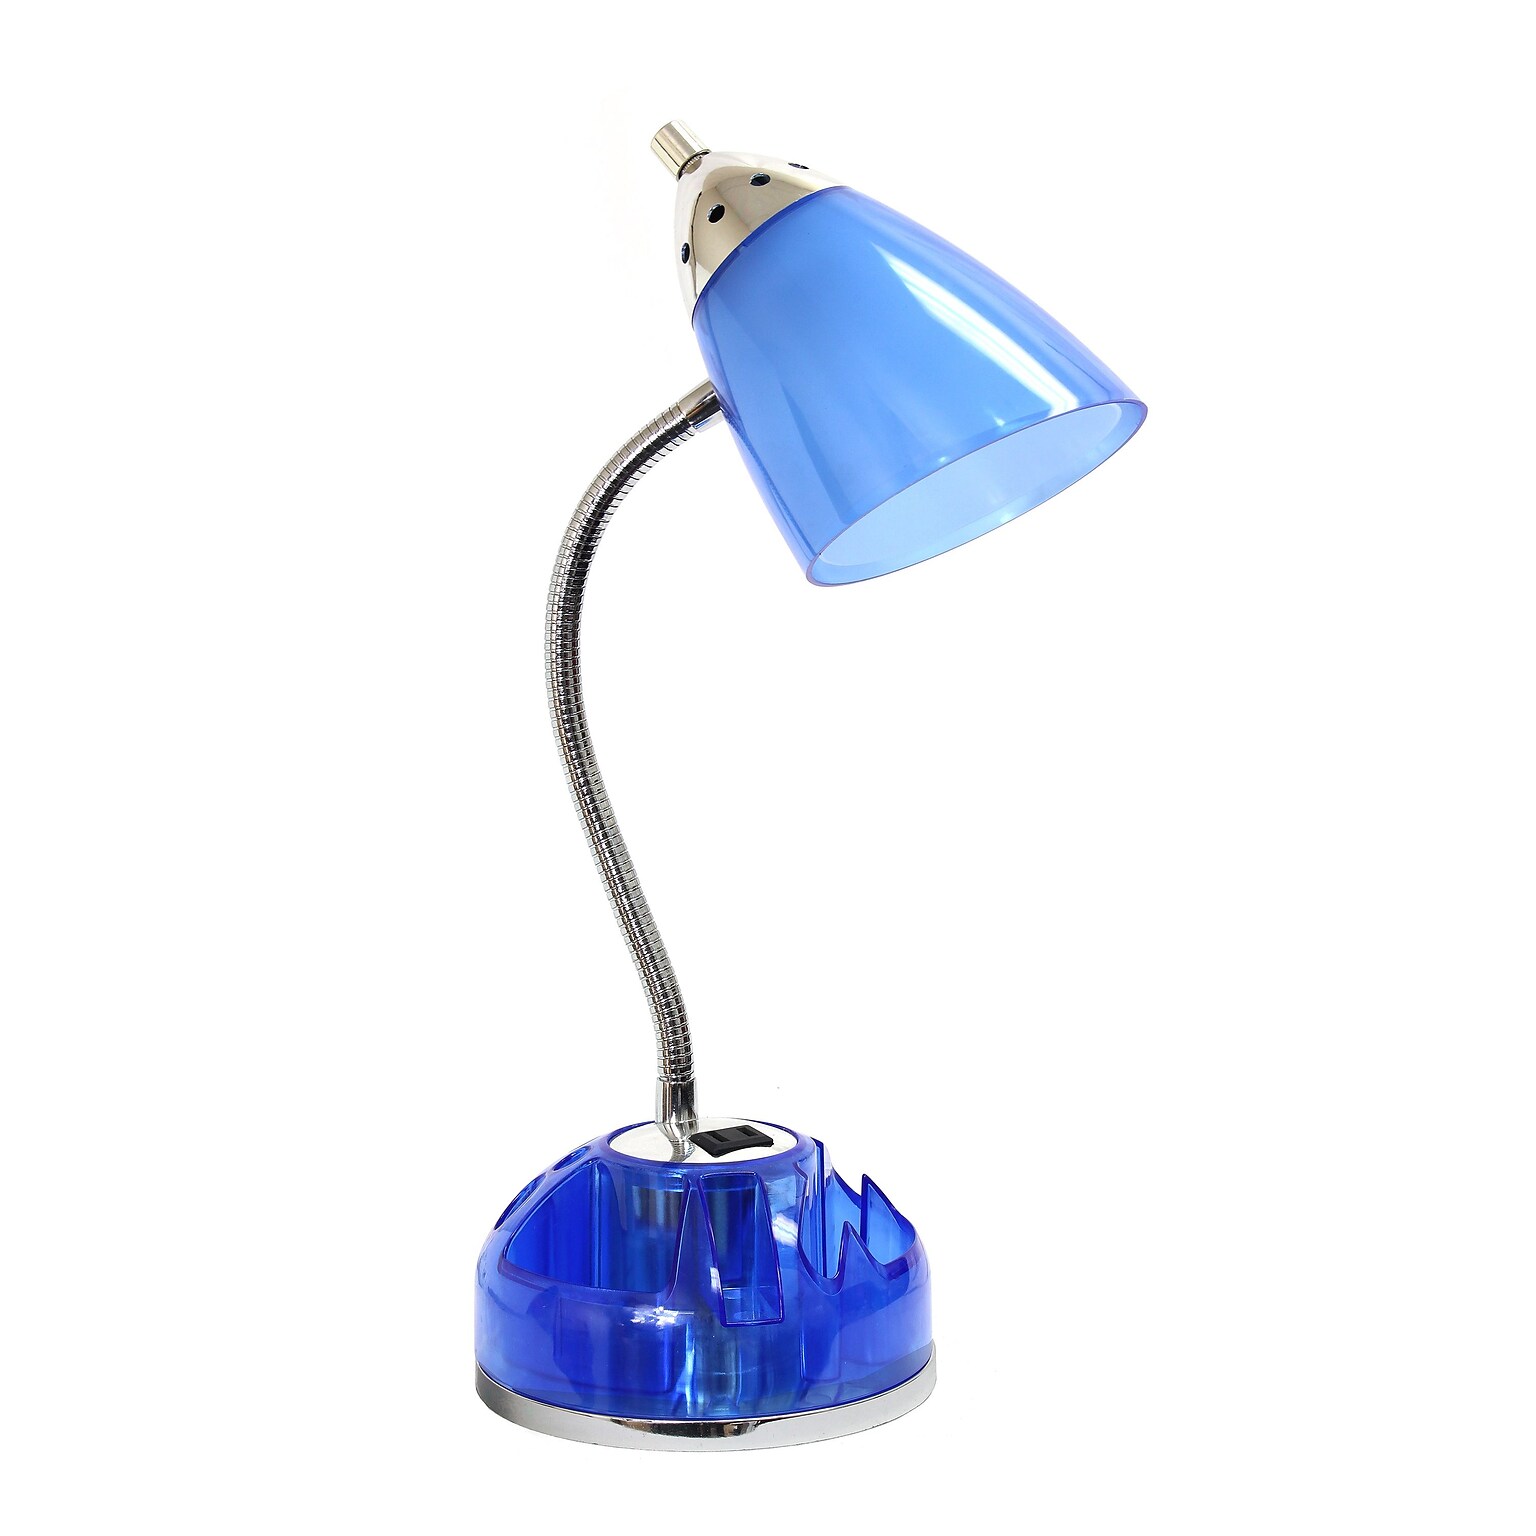 LimeLights Incandescent Desk Lamp, Blue (LD1015-CBL)